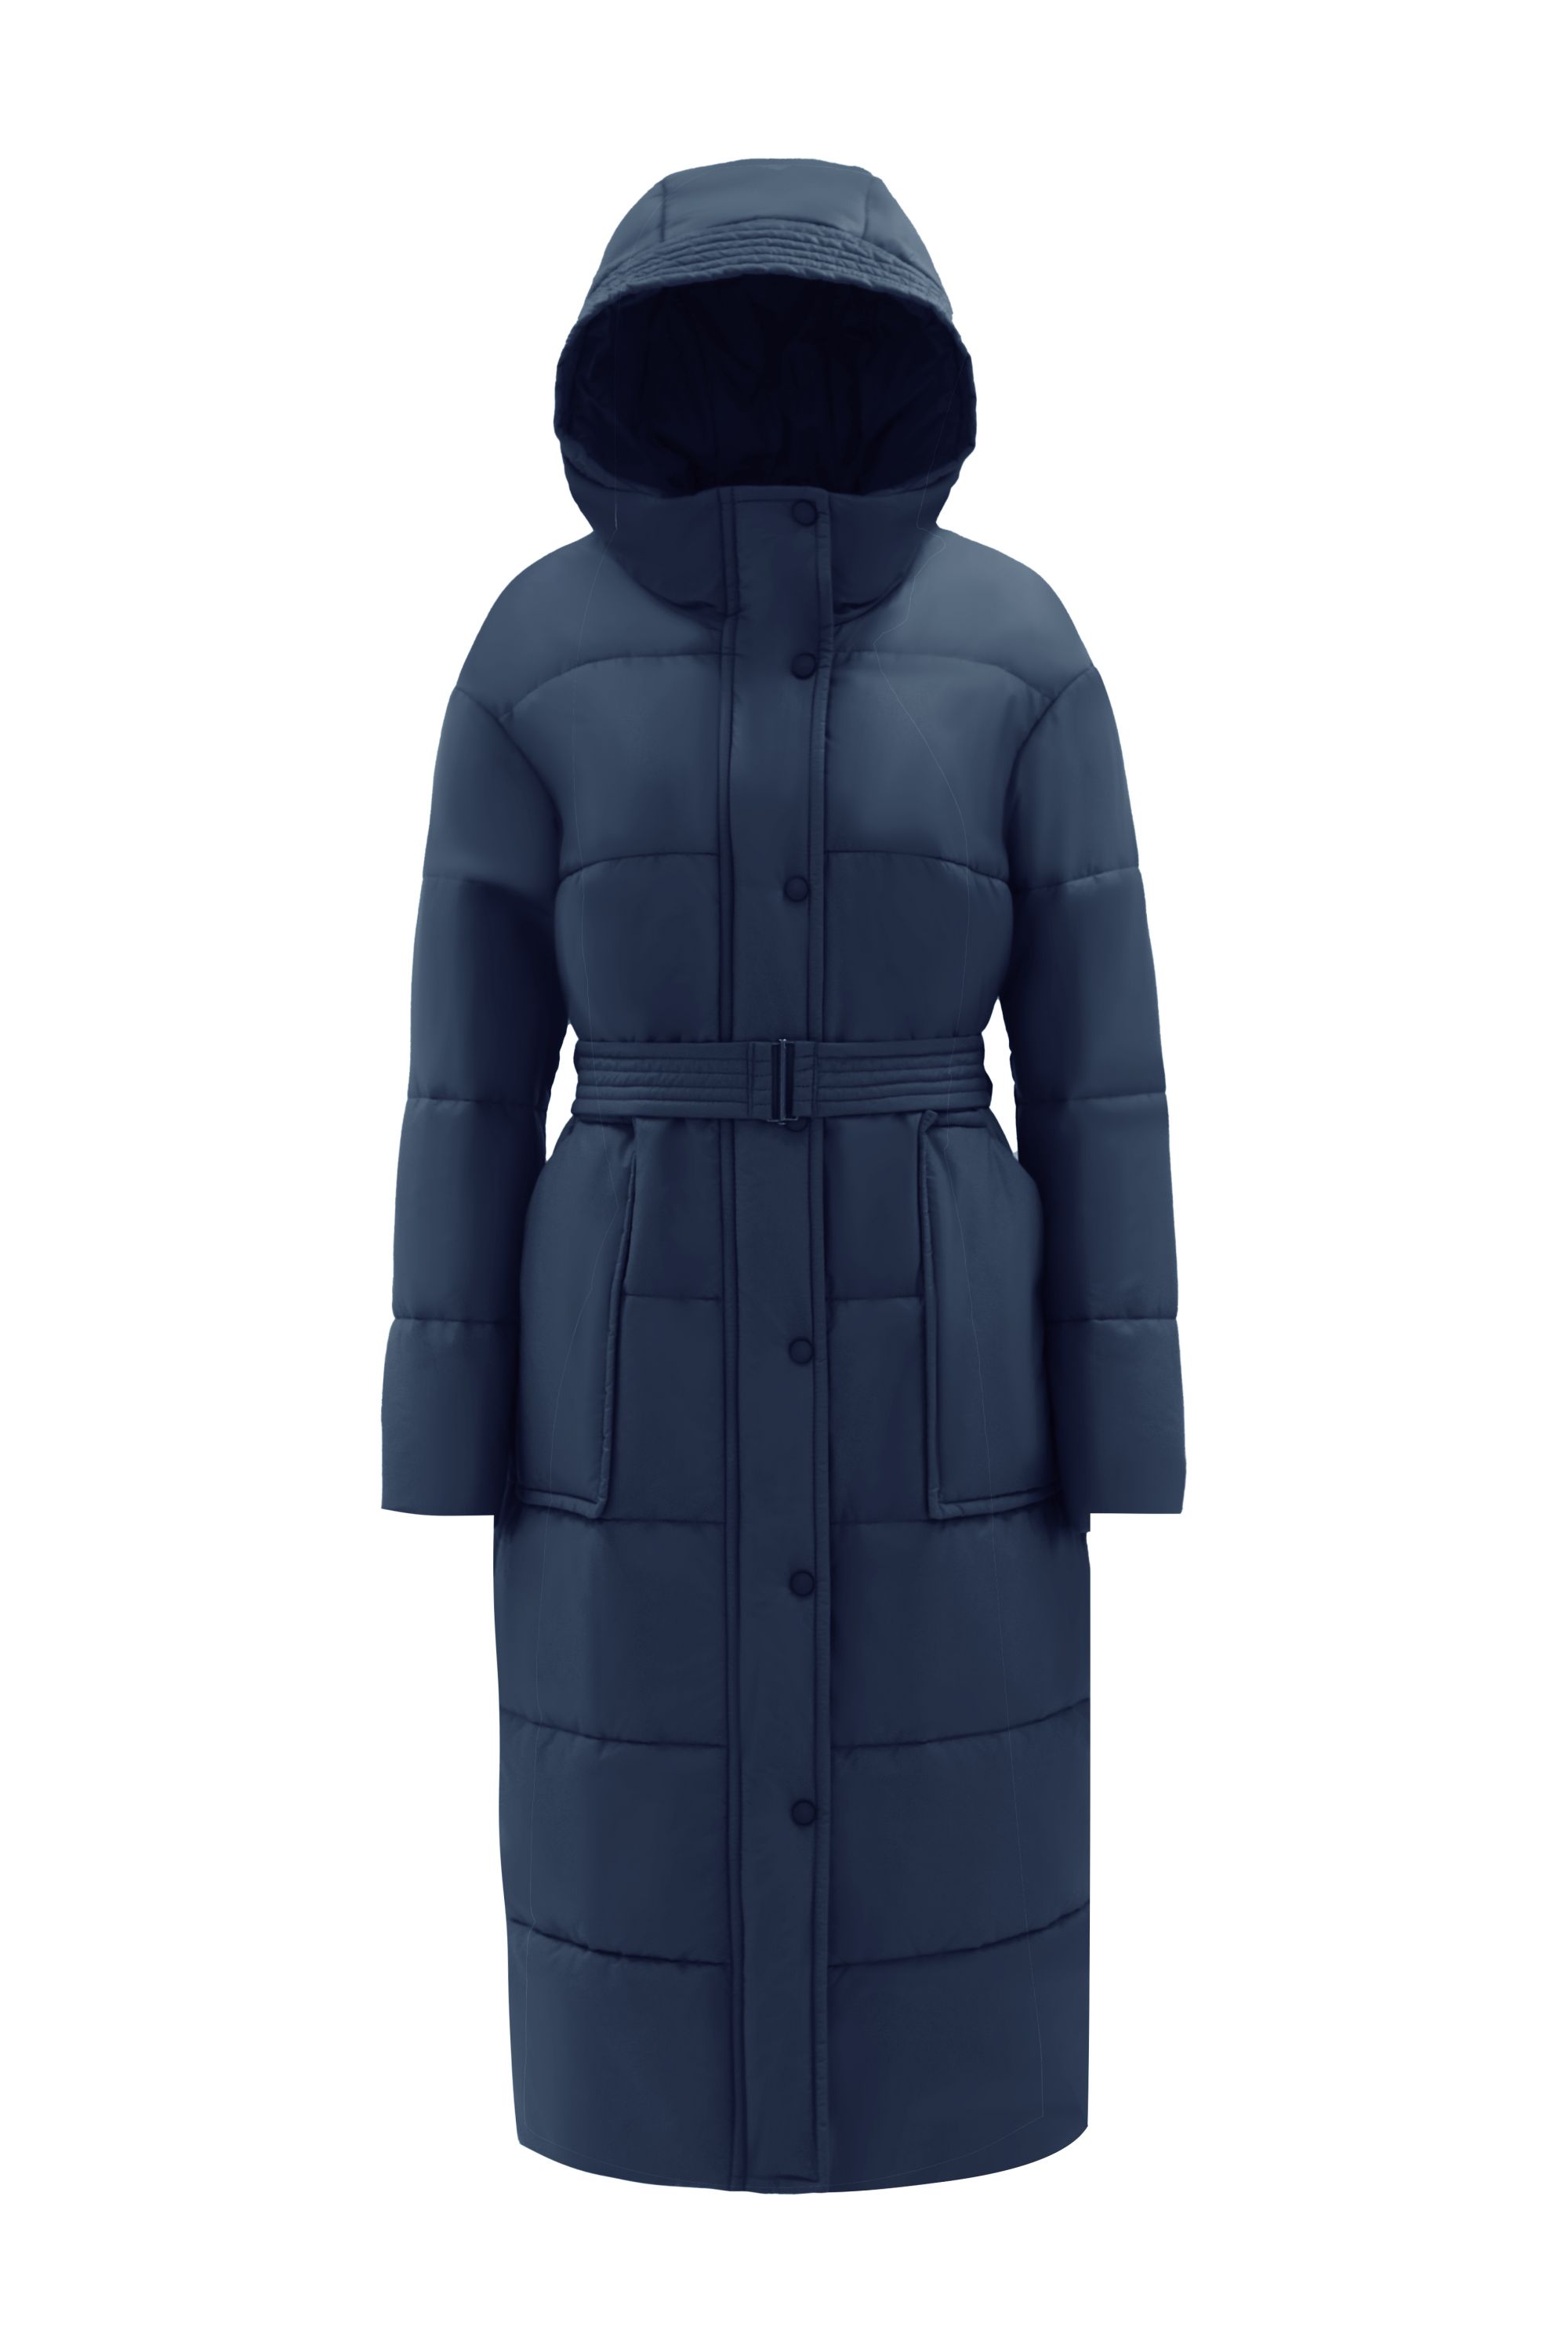 Пальто женское плащевое утепленное 5-12173-1. Фото 1.